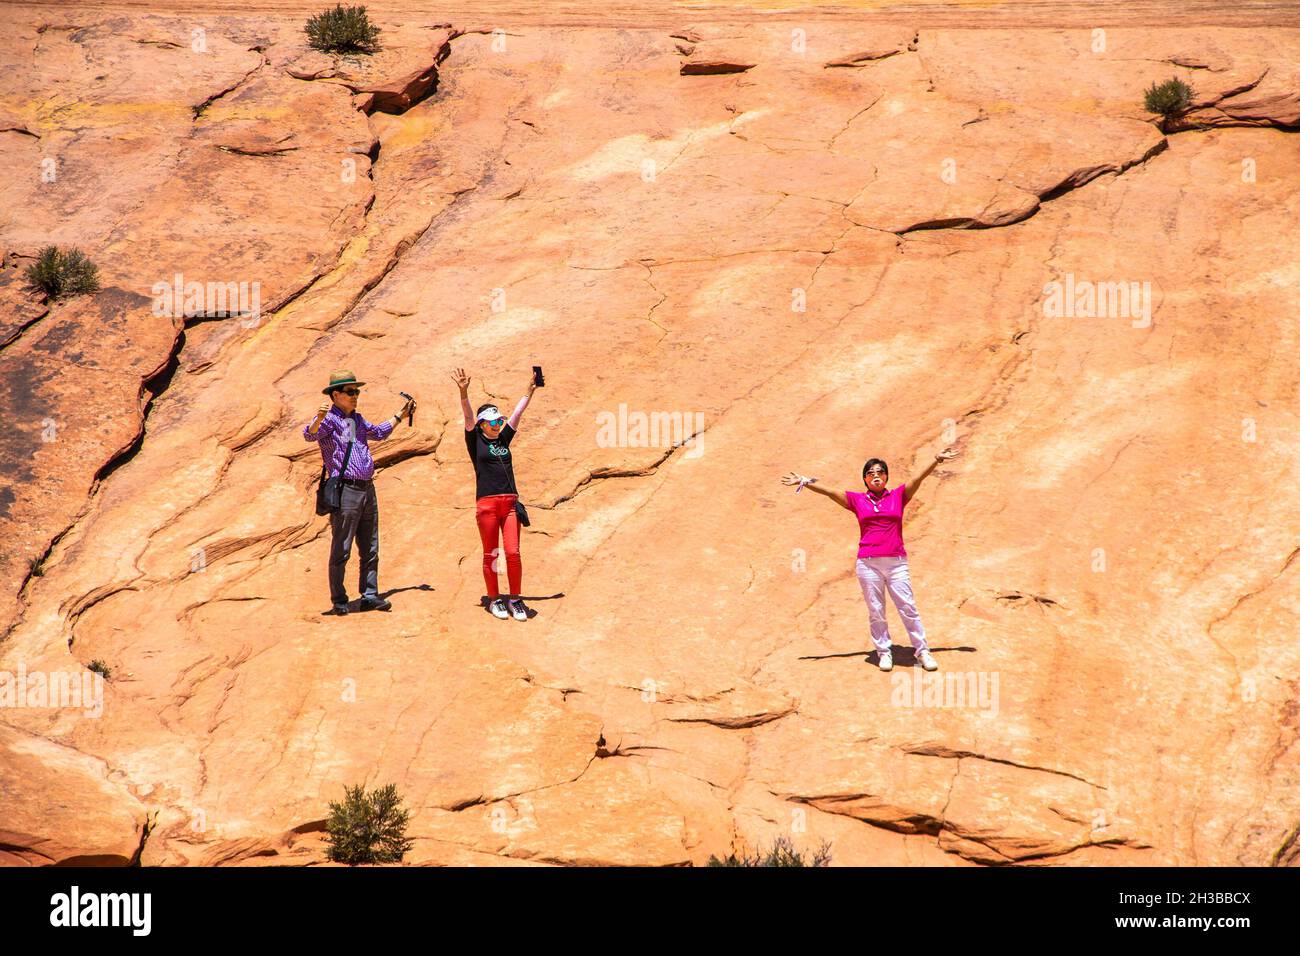 0f-24-2021 Zion Urah USA - les gens sur une pente dans le parc national de Zion dans l'Utah Etats-Unis en profitant de l'accostics pour chanter la chanson religieuse How Great Banque D'Images